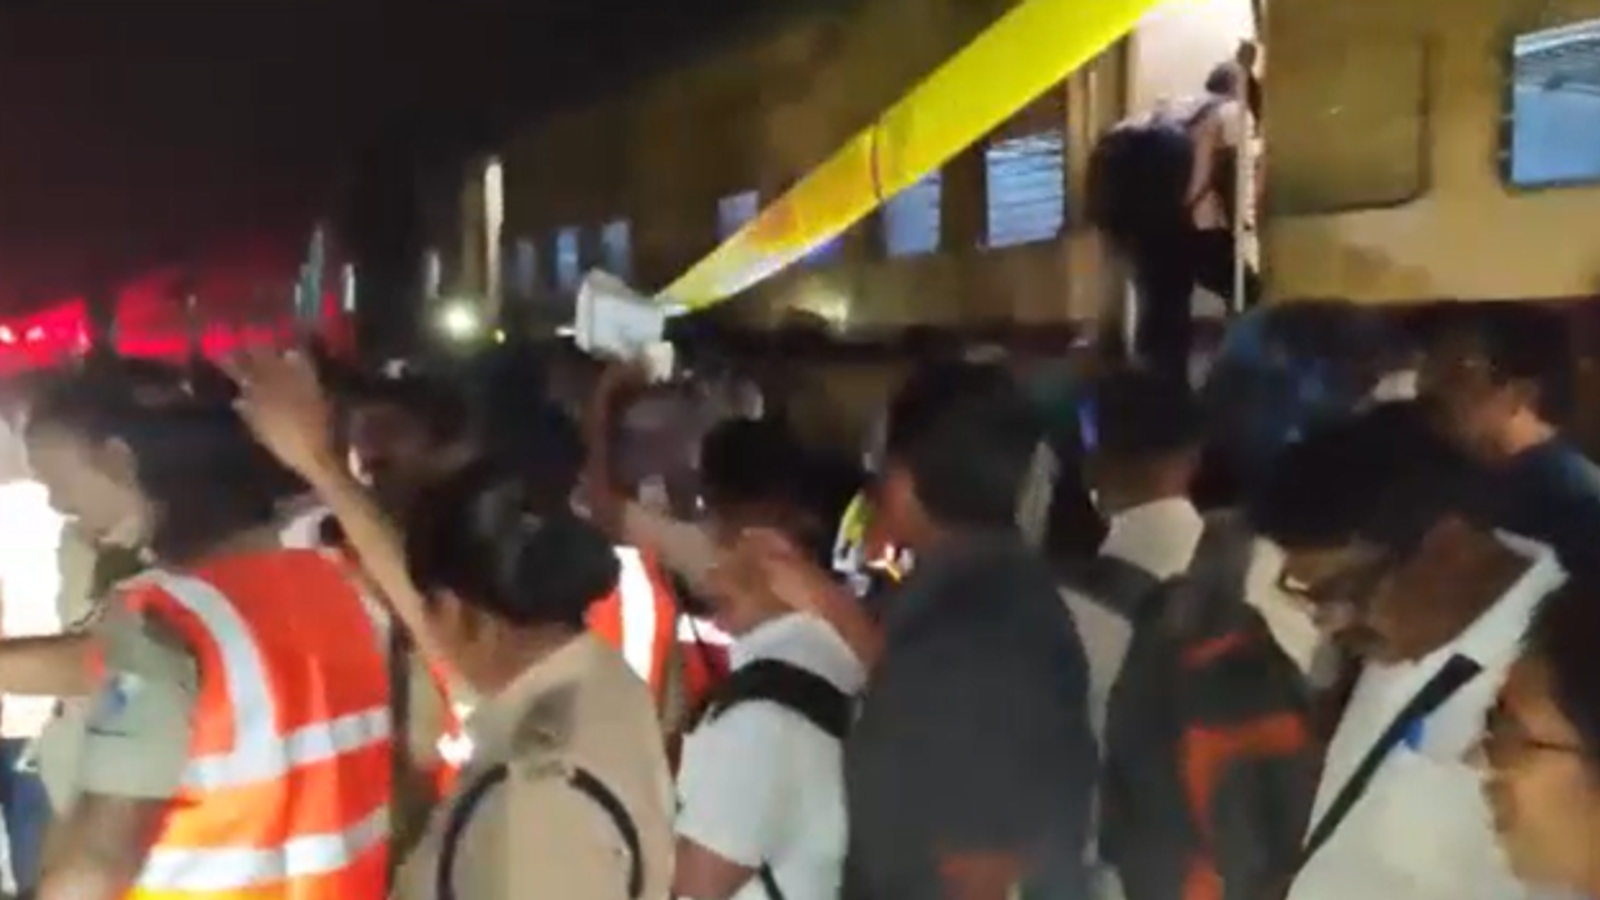 Sechs Tote und 40 Verletzte bei einem Zugunfall in Indien  Weltnachrichten